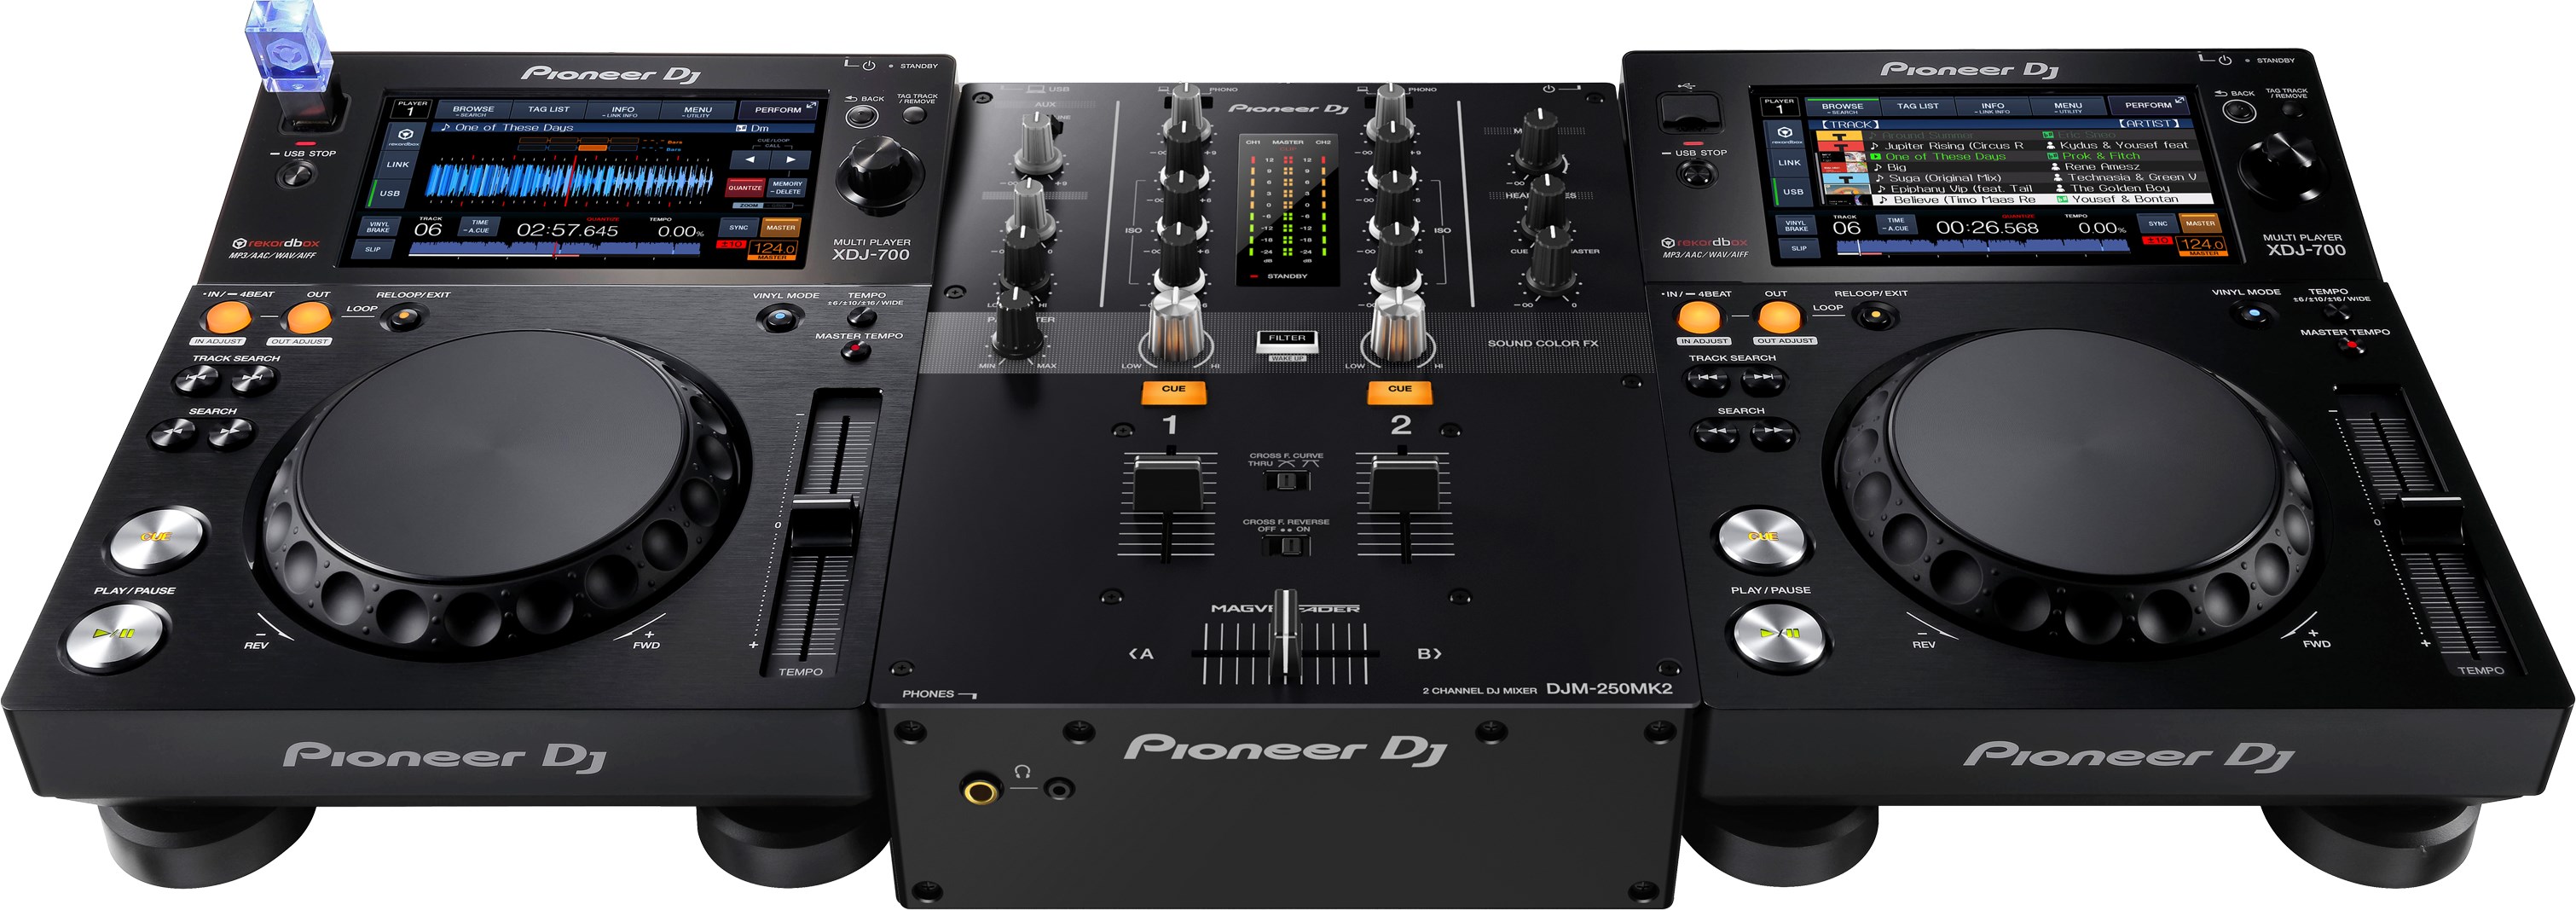 Pioneer Dj Djm-250mk2 - DJ mixer - Variation 3